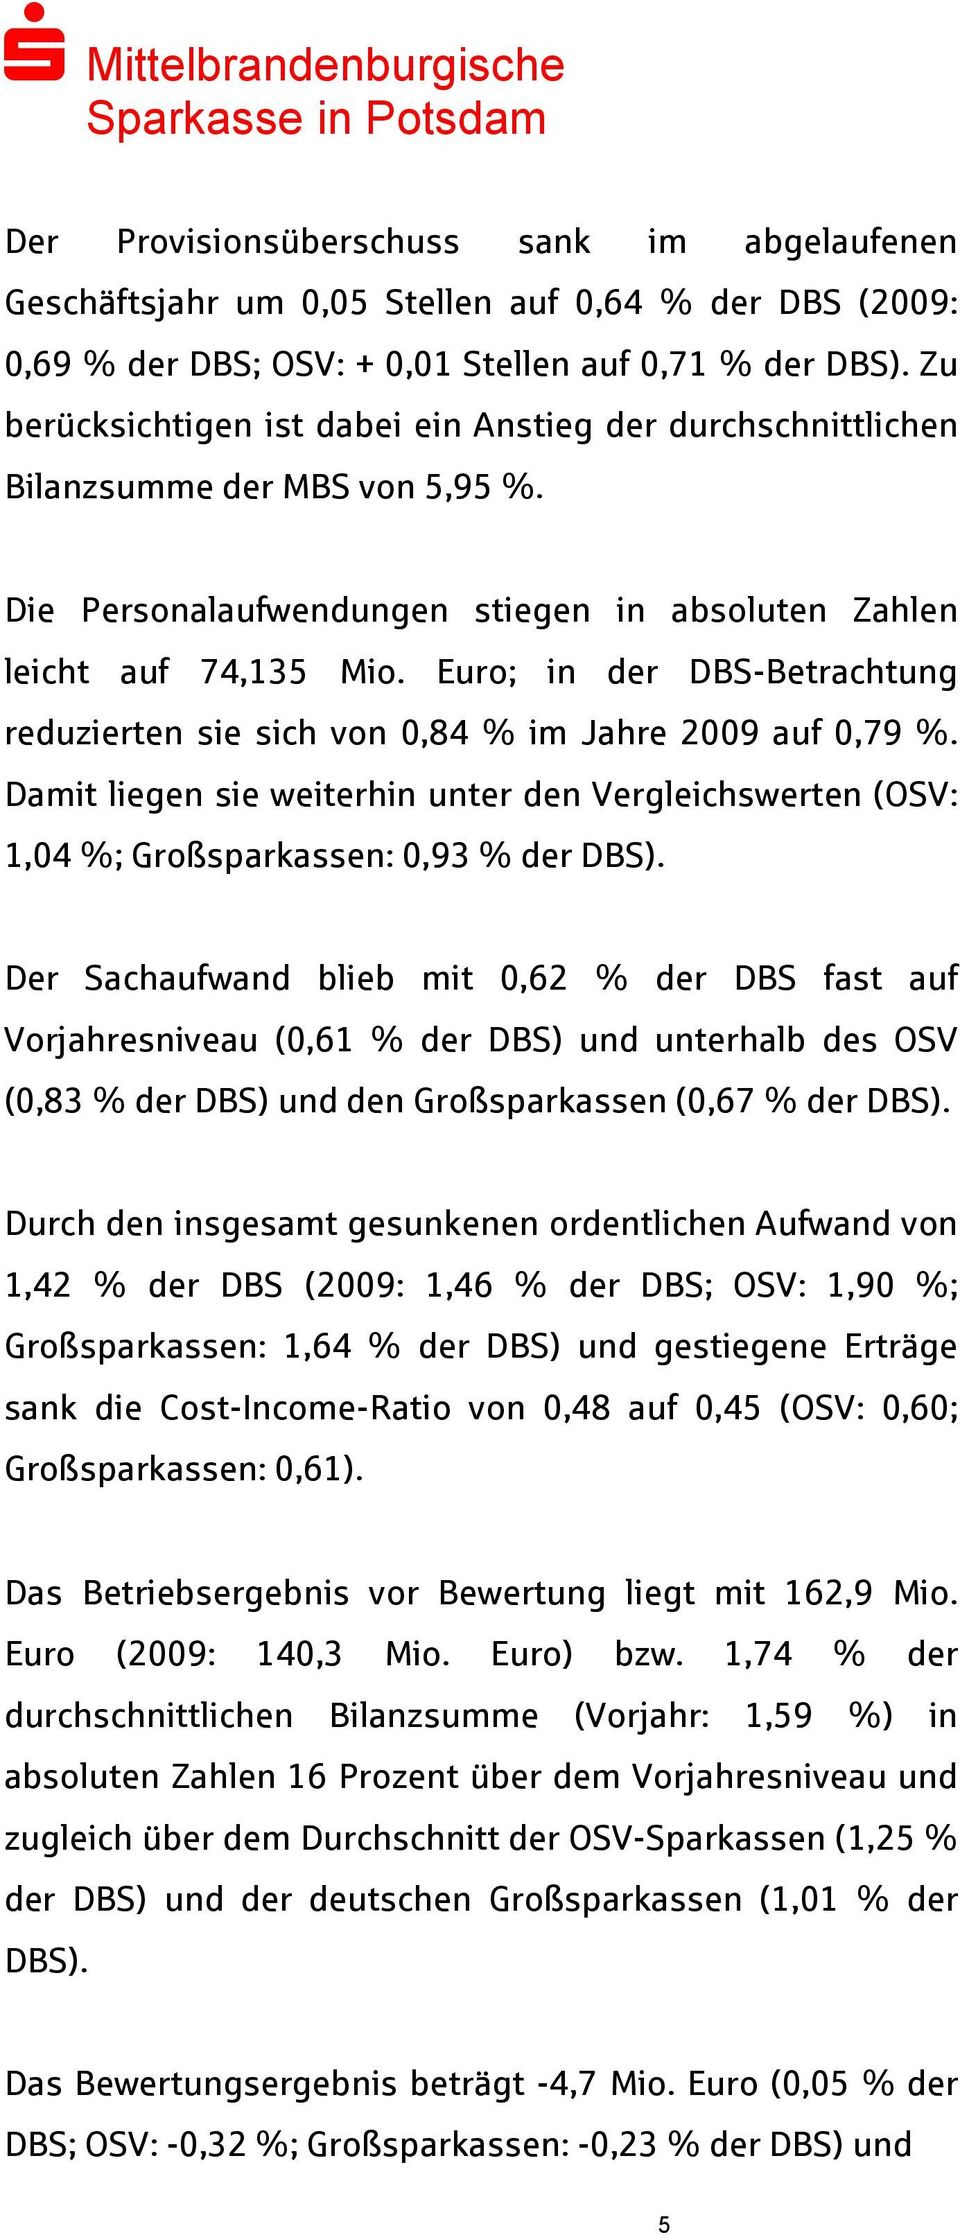 Euro; in der DBS-Betrachtung reduzierten sie sich von 0,84 % im Jahre 2009 auf 0,79 %. Damit liegen sie weiterhin unter den Vergleichswerten (OSV: 1,04 %; Großsparkassen: 0,93 % der DBS).